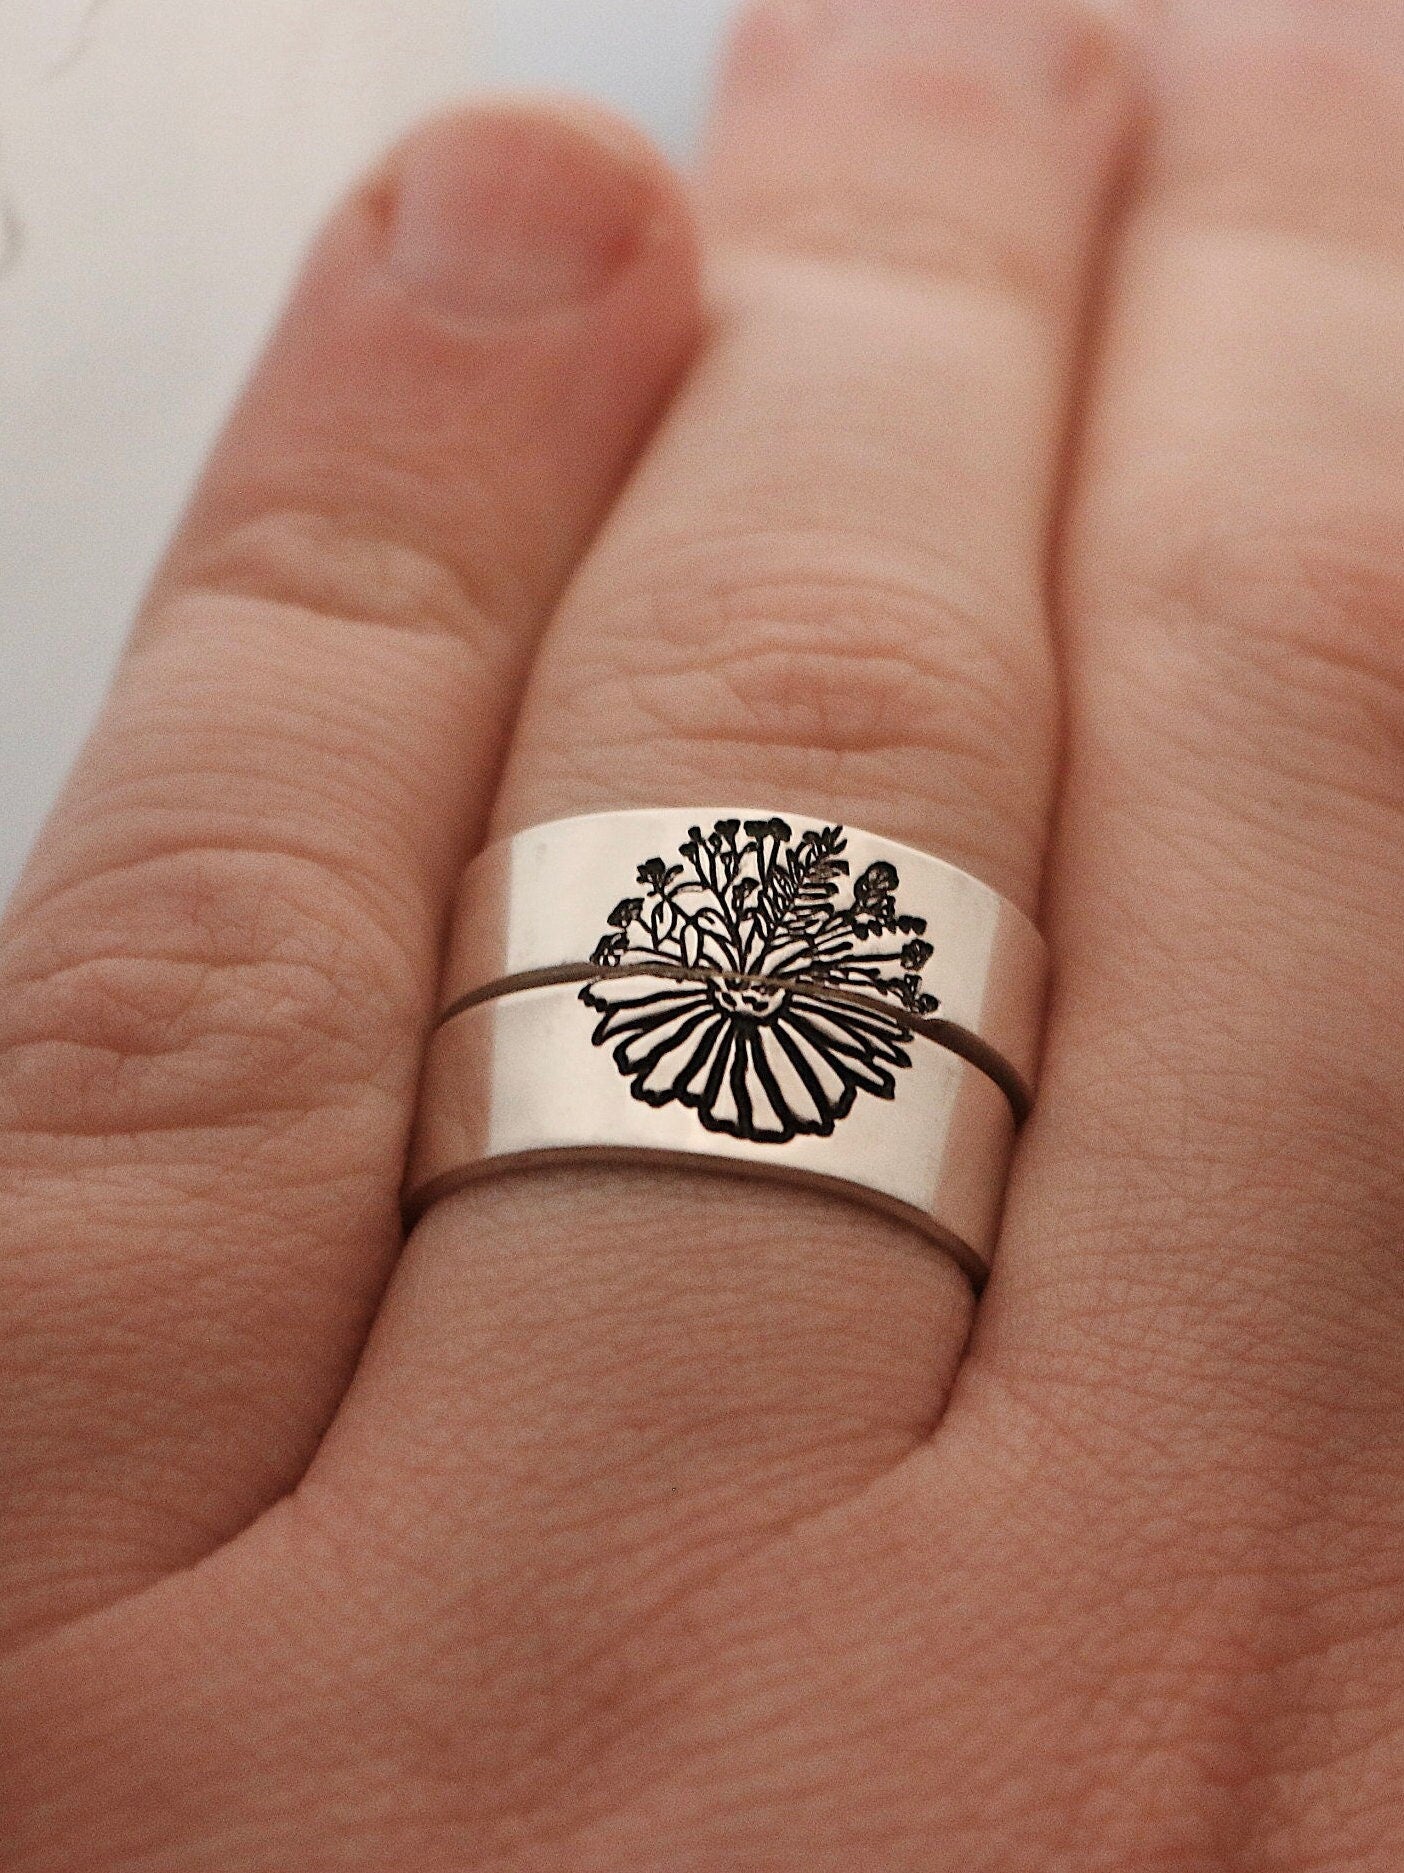 Forever Love Couples Ring for women and men lovers | eBay